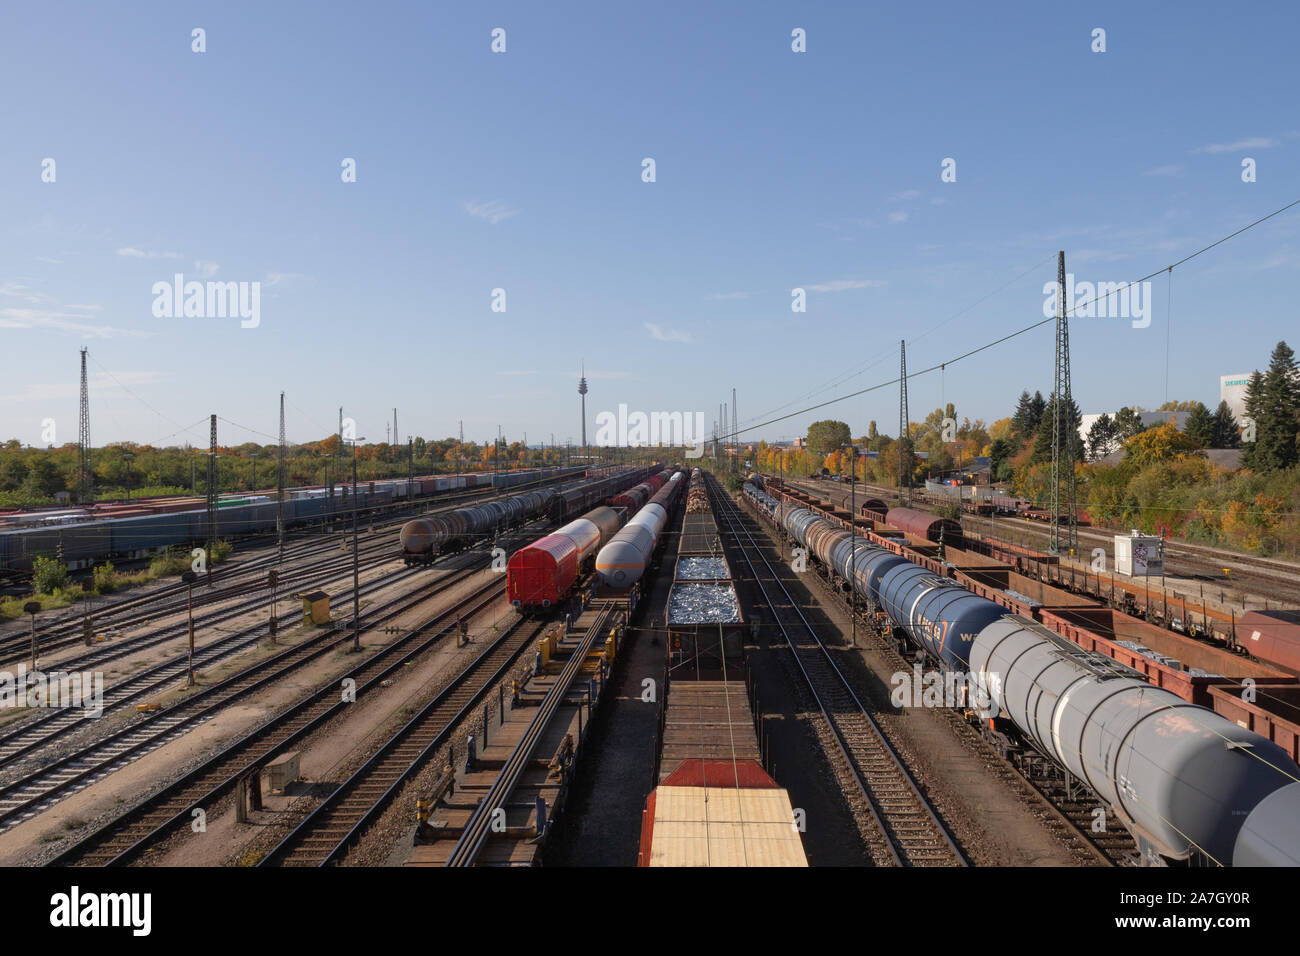 Nürnberg, Deutschland am Tag der offenen Tür 2019 13. Oktober: Bahnhof  Rangierbahnhof Stockfotografie - Alamy